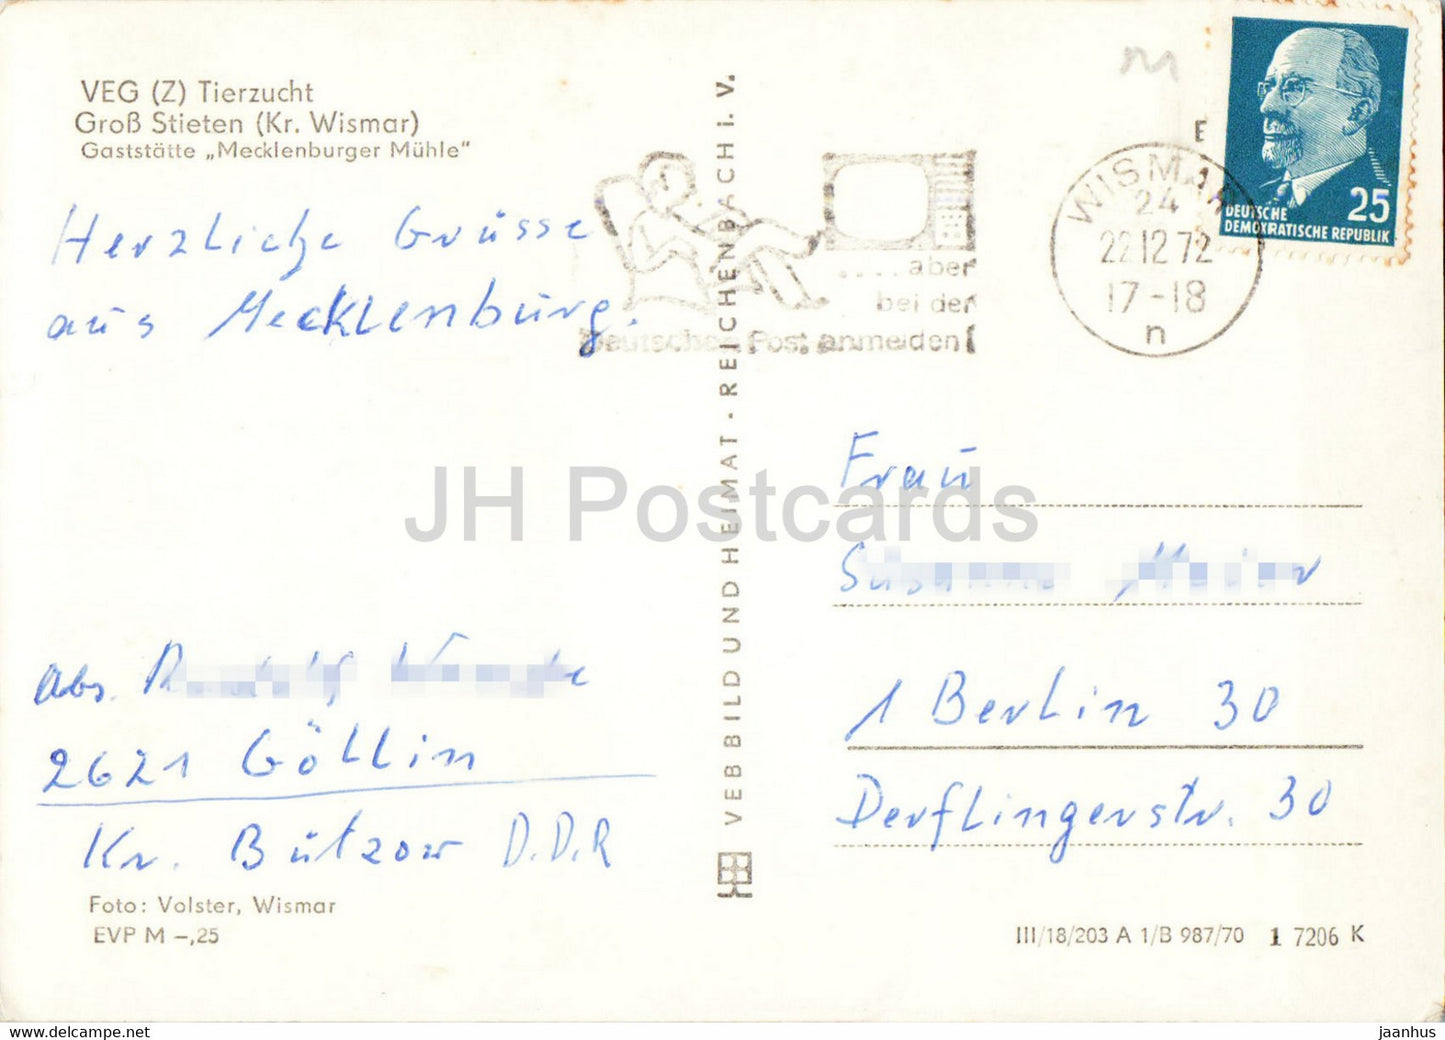 VEG Tierzucht - Gross Stieten - Gaststatte Mecklenburger Muhle - moulin à vent - carte postale ancienne - 1972 - Allemagne DDR - utilisé